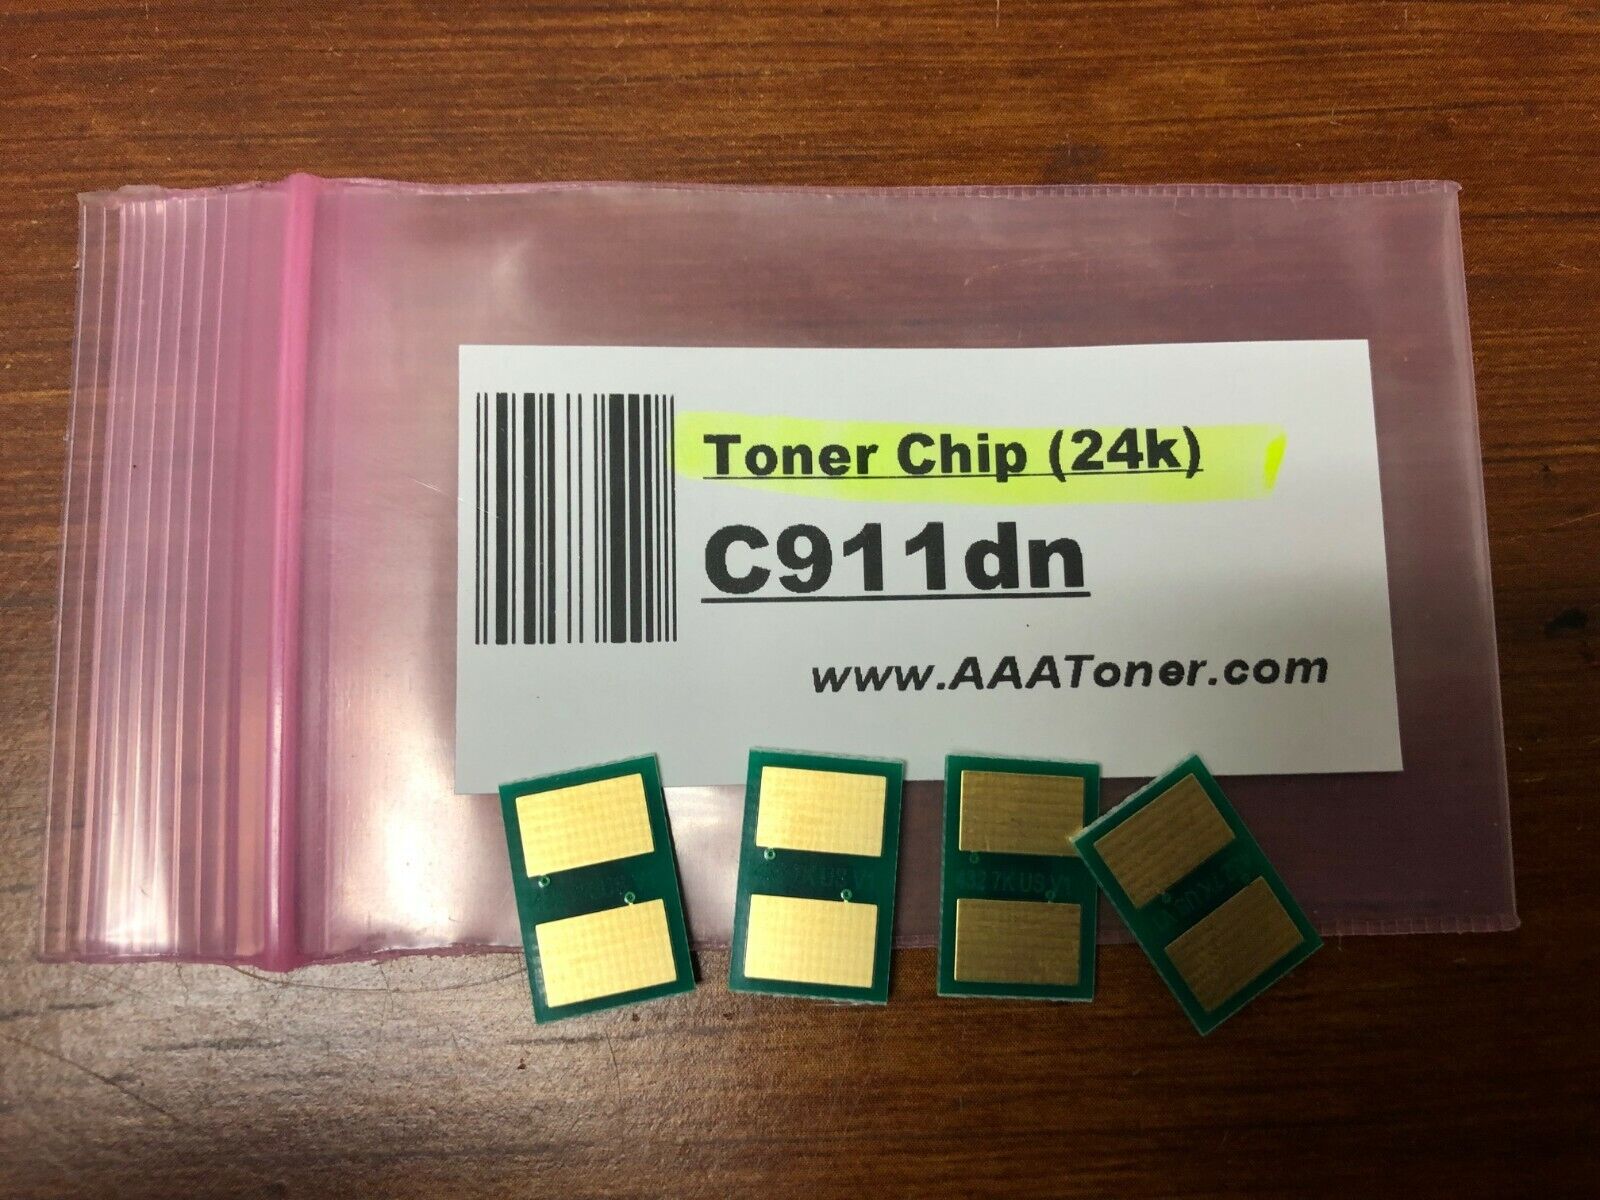 4pk - Toner Reset Chip for OKI C911, C911dn model only (24k) Refill